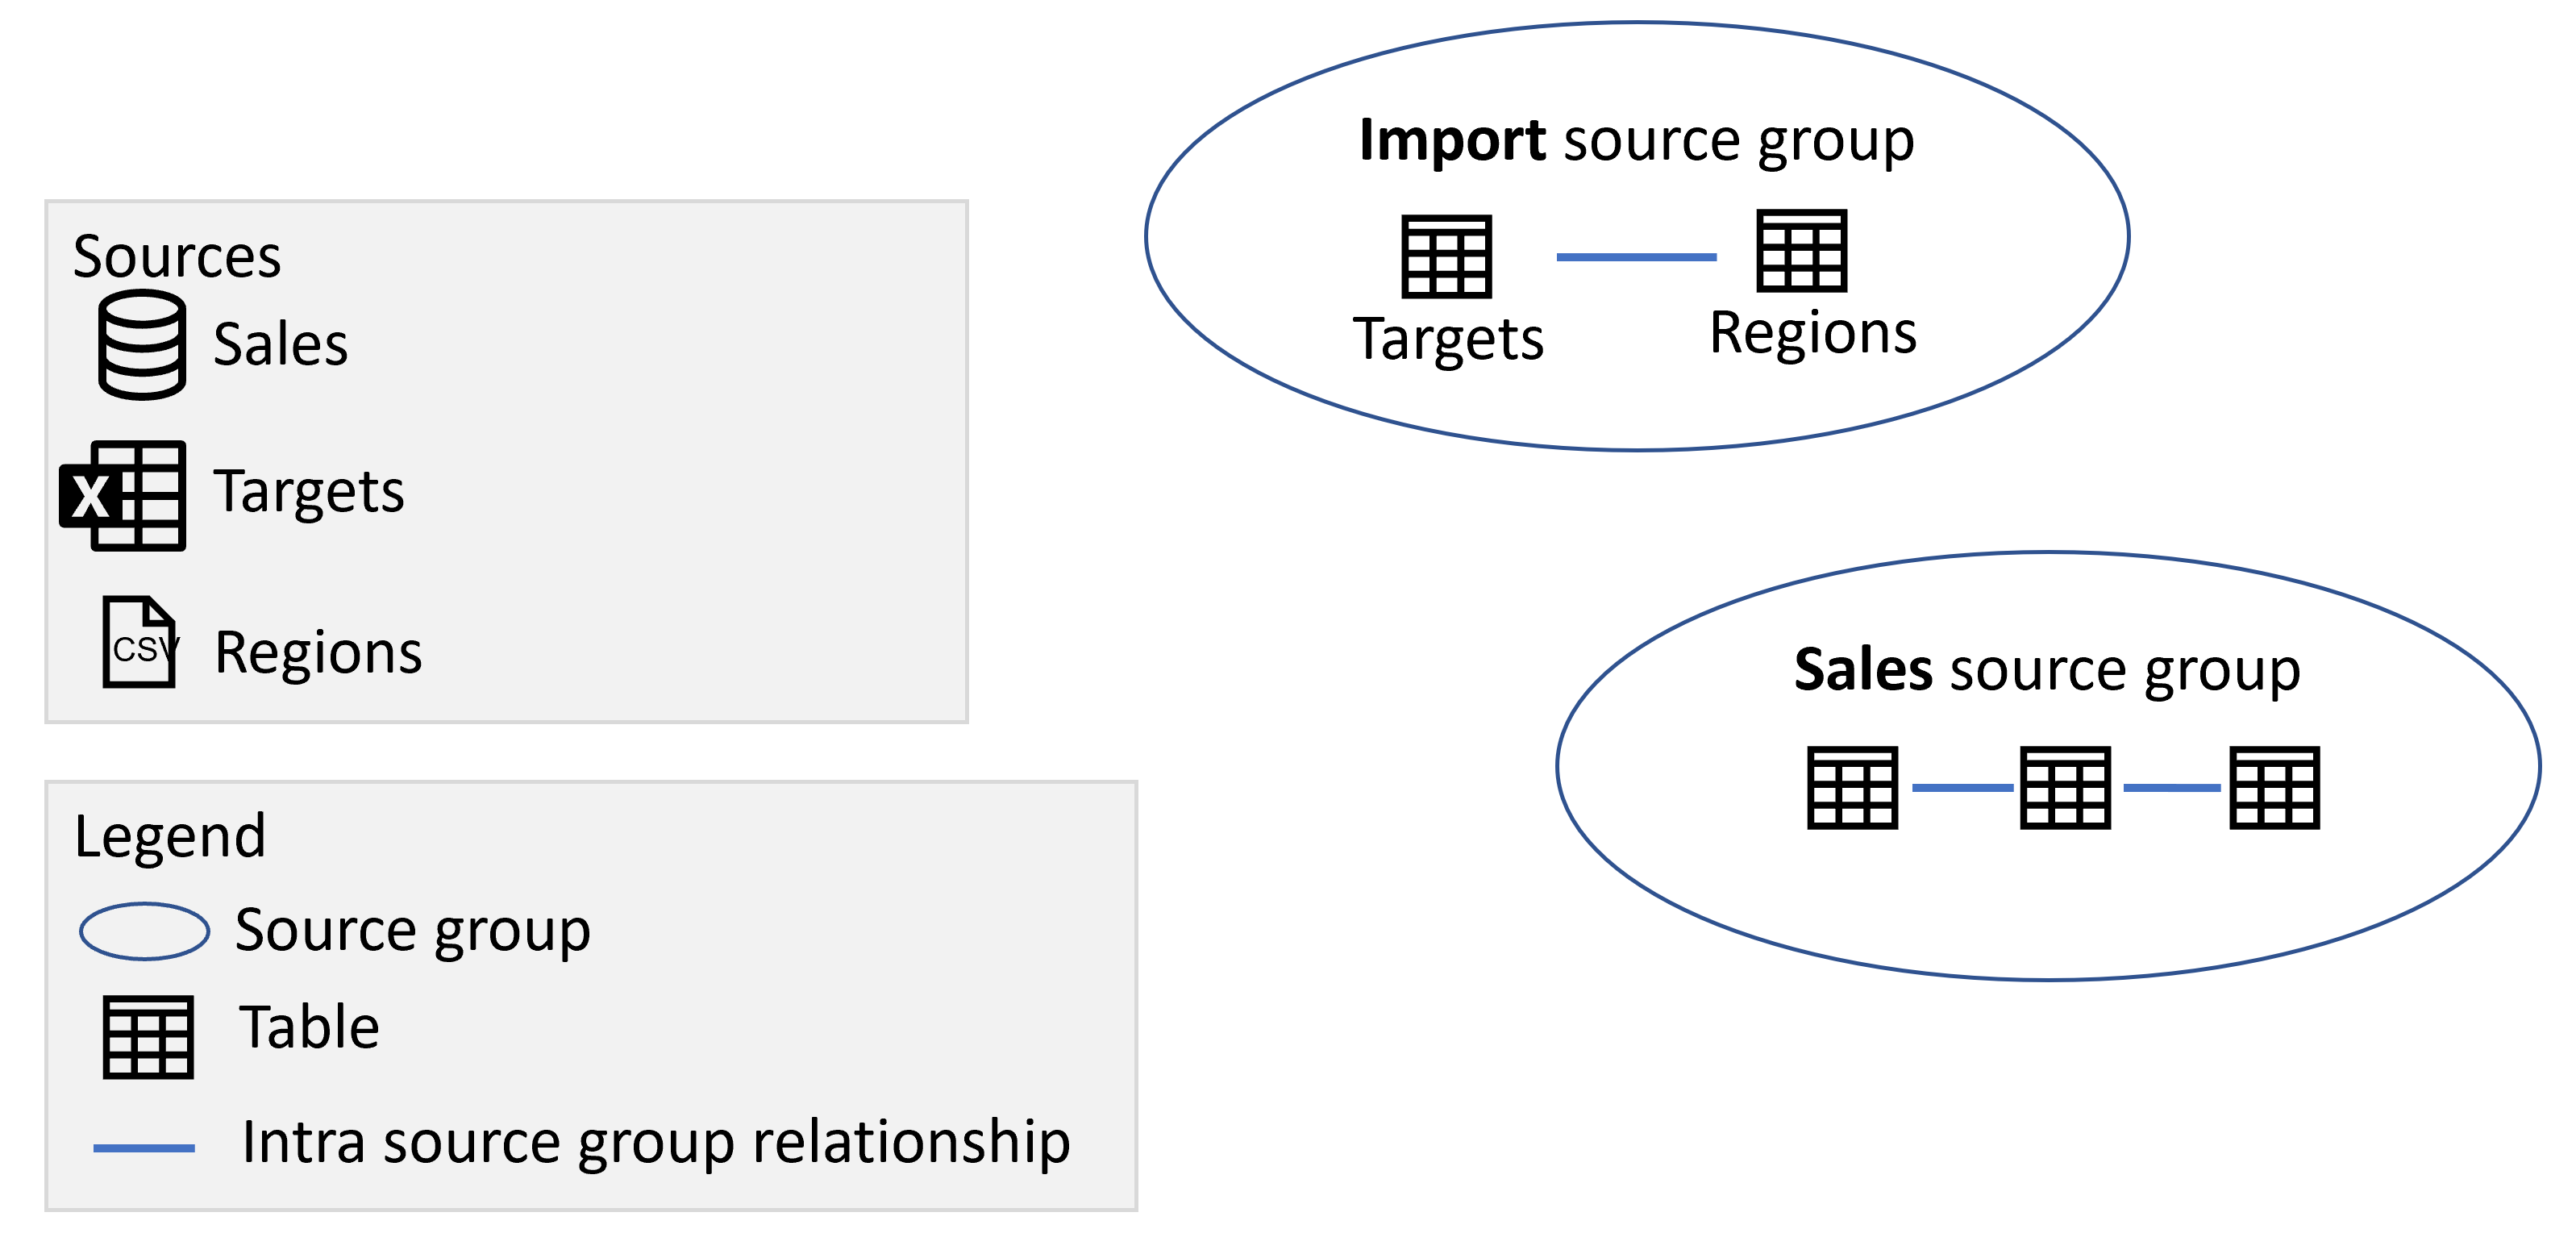 Diagram memperlihatkan grup sumber Impor dan Penjualan yang berisi tabel dari sumber masing-masing.